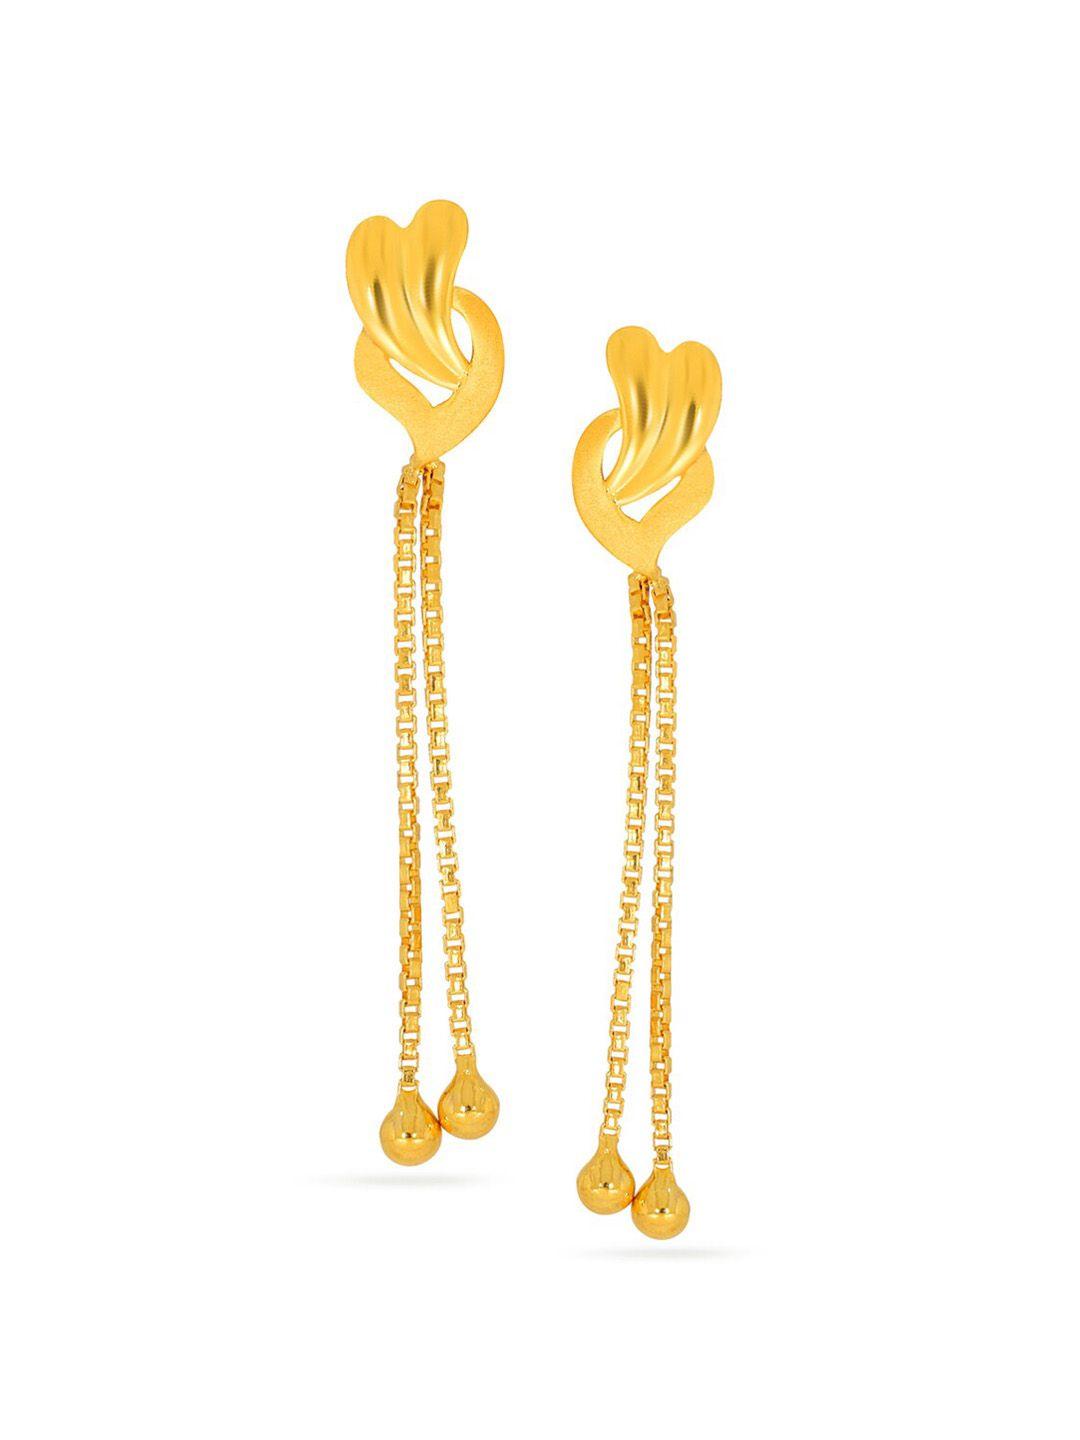 senco artsy curve 22kt gold drop earrings-2.0gm